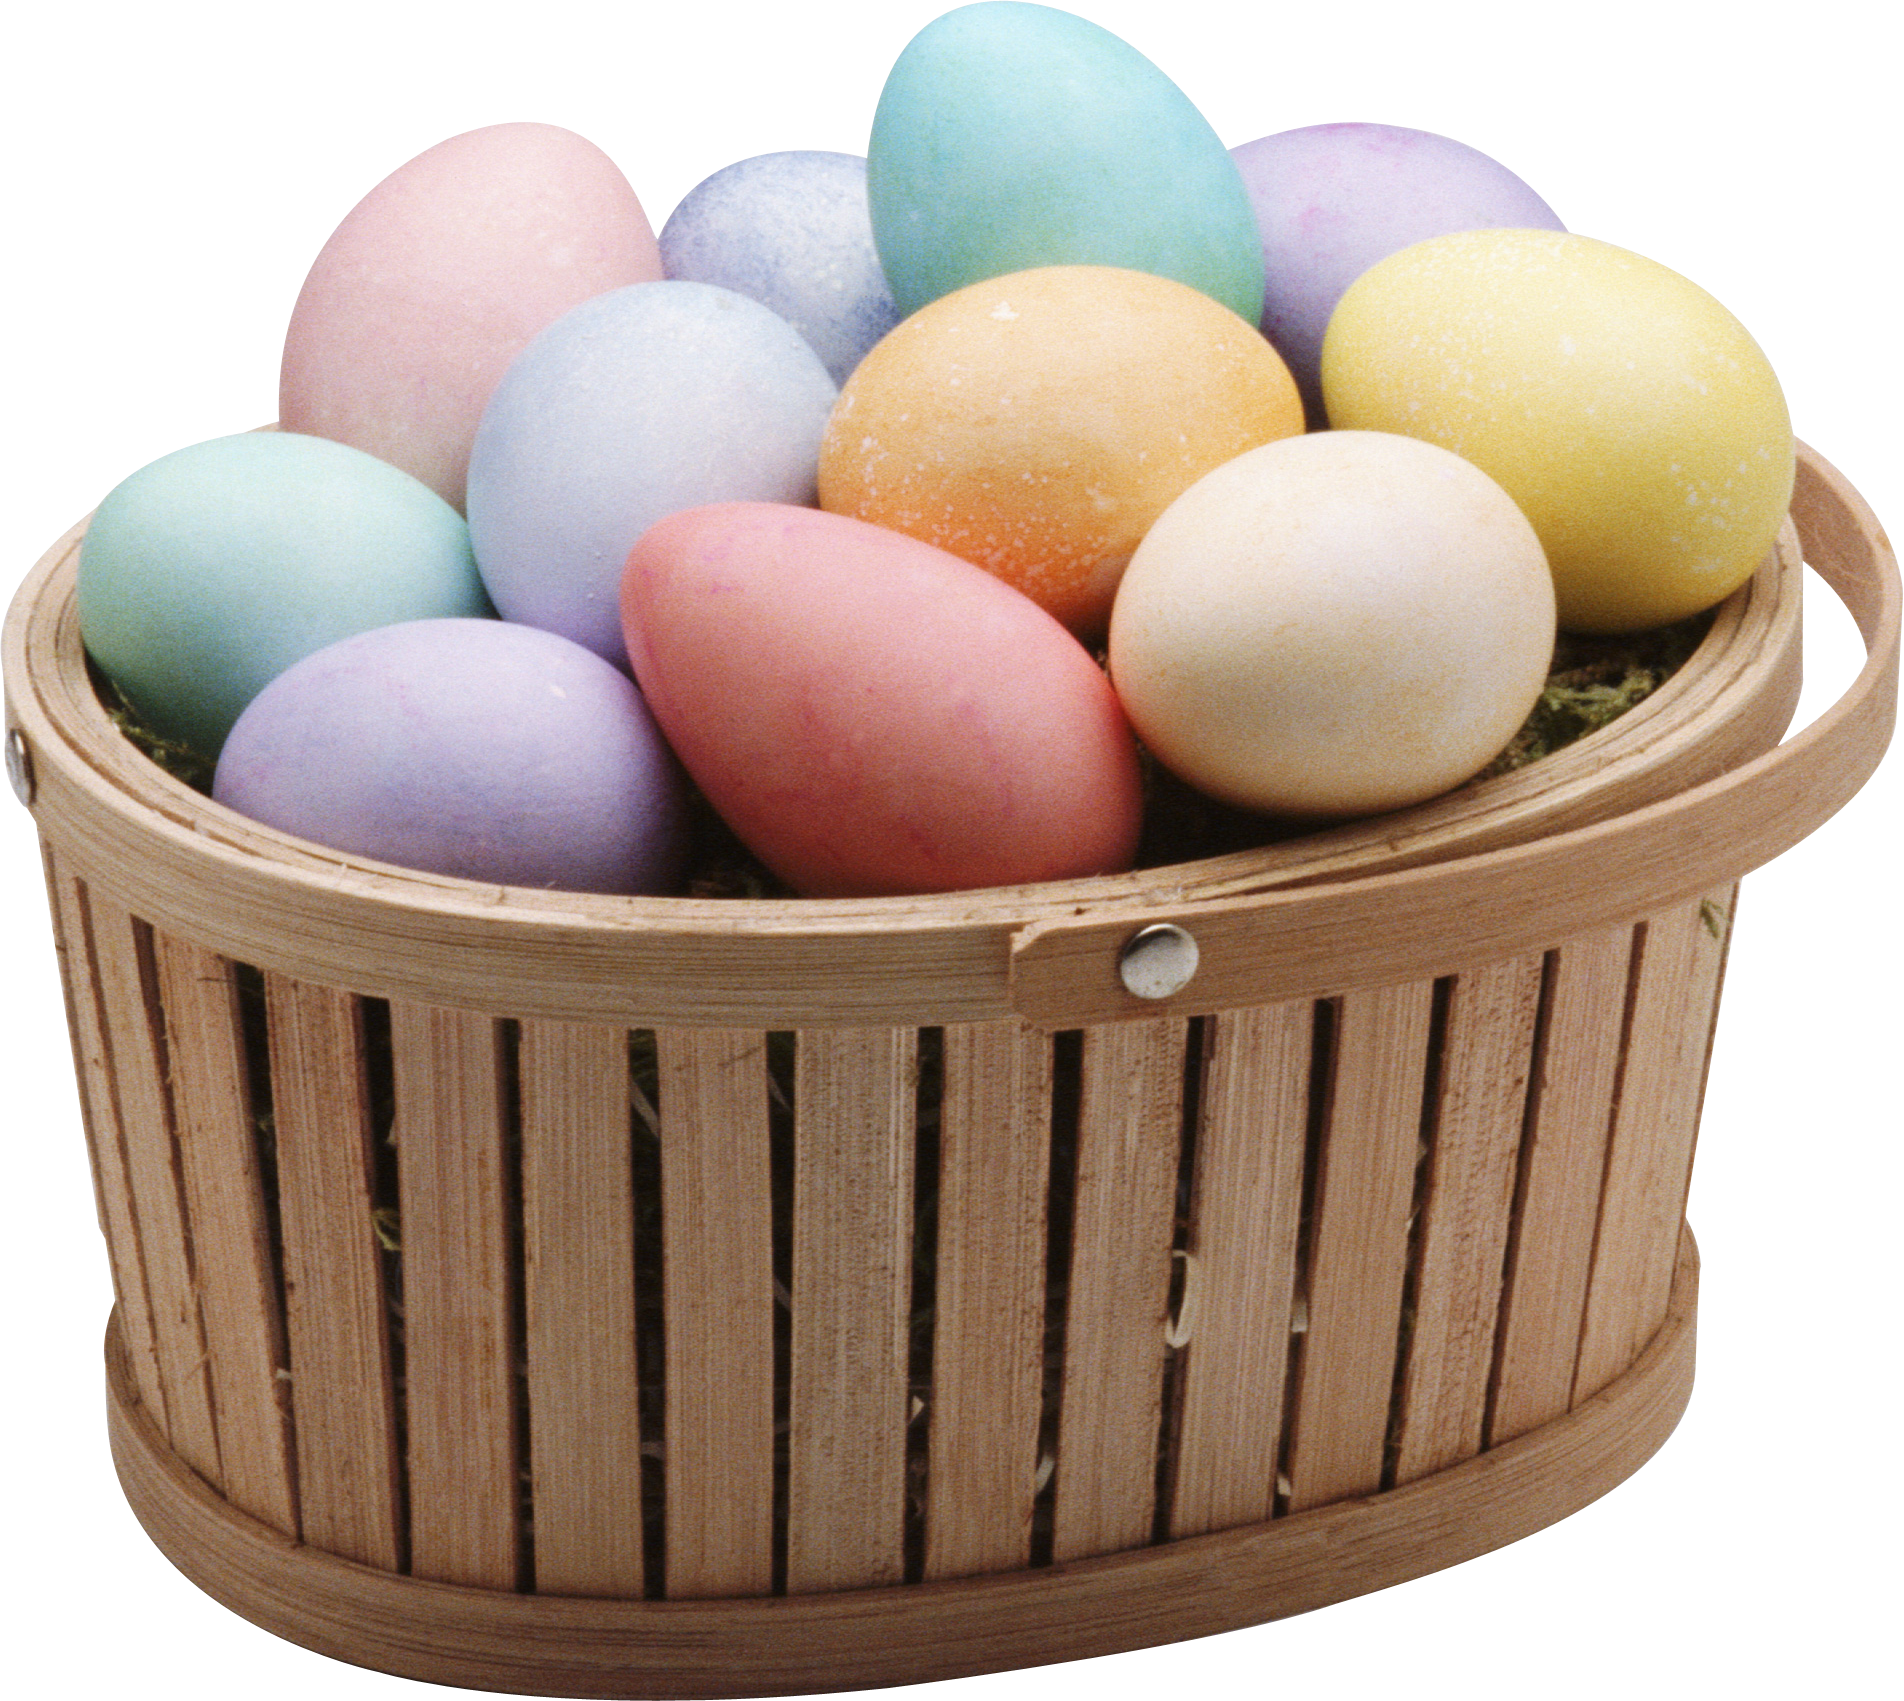 Telur berwarna-warni dalam keranjang